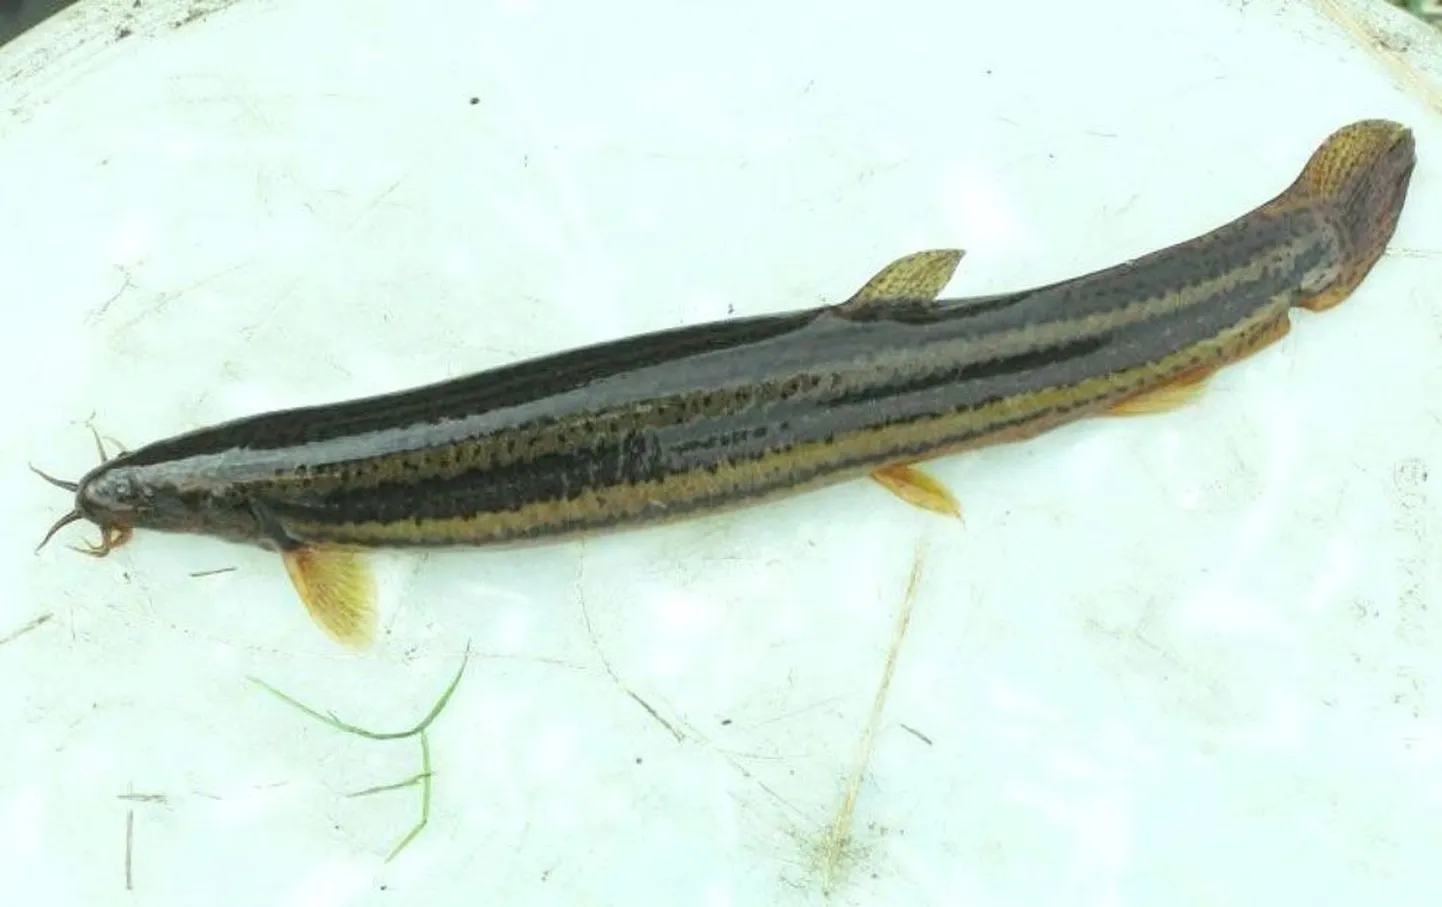 Saulepi all võrku jäänud vingerjas on teadaolevalt selle liigi teine registreeritud leid Pärnu lahest.